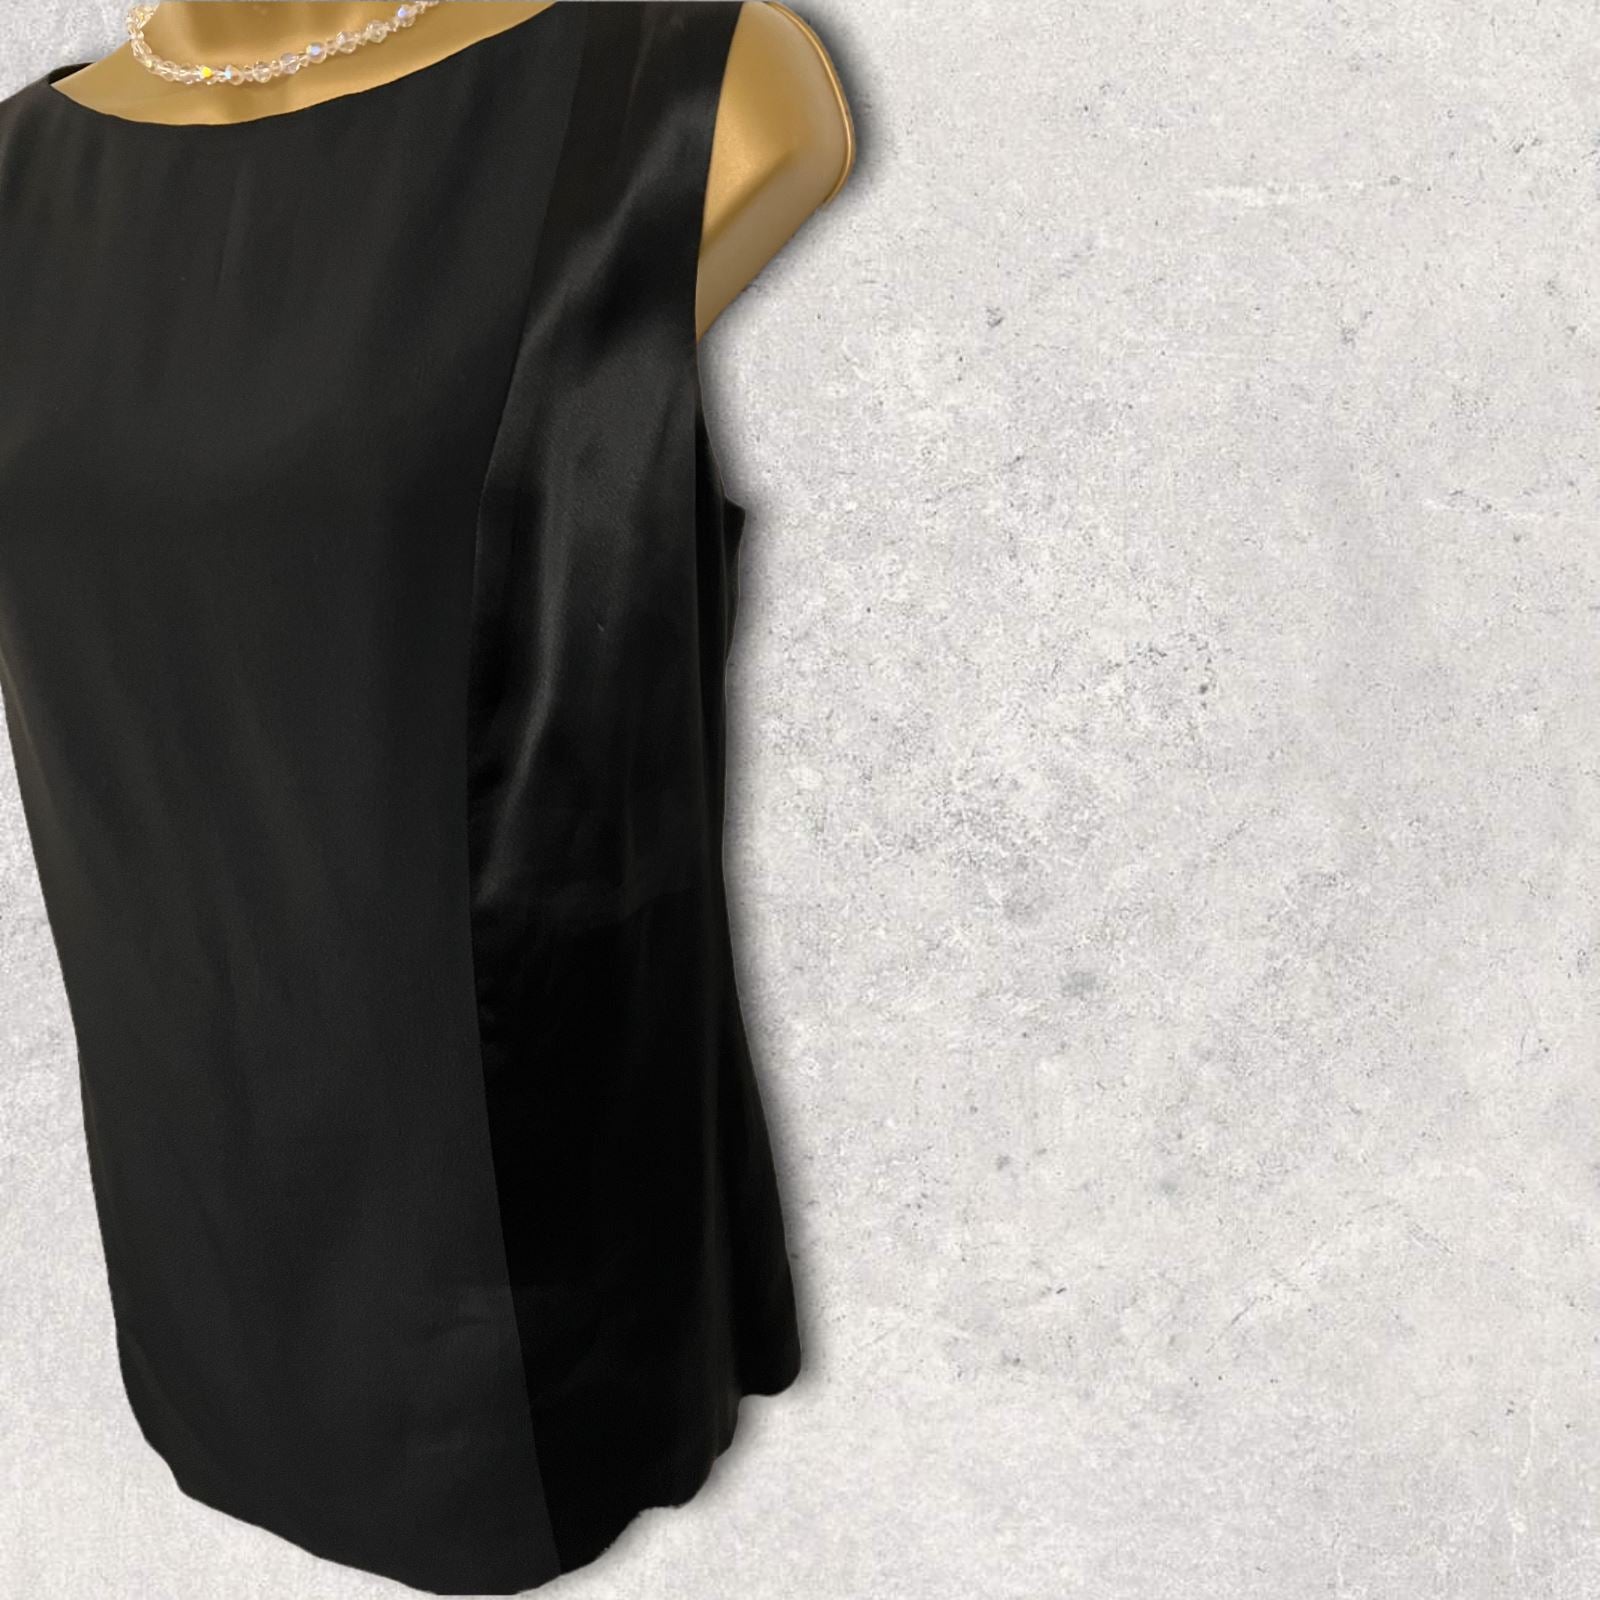 Byblos Black Silky Sleeveless Vest Top UK 12 US 8 EU 40 IT 44 Timeless Fashions